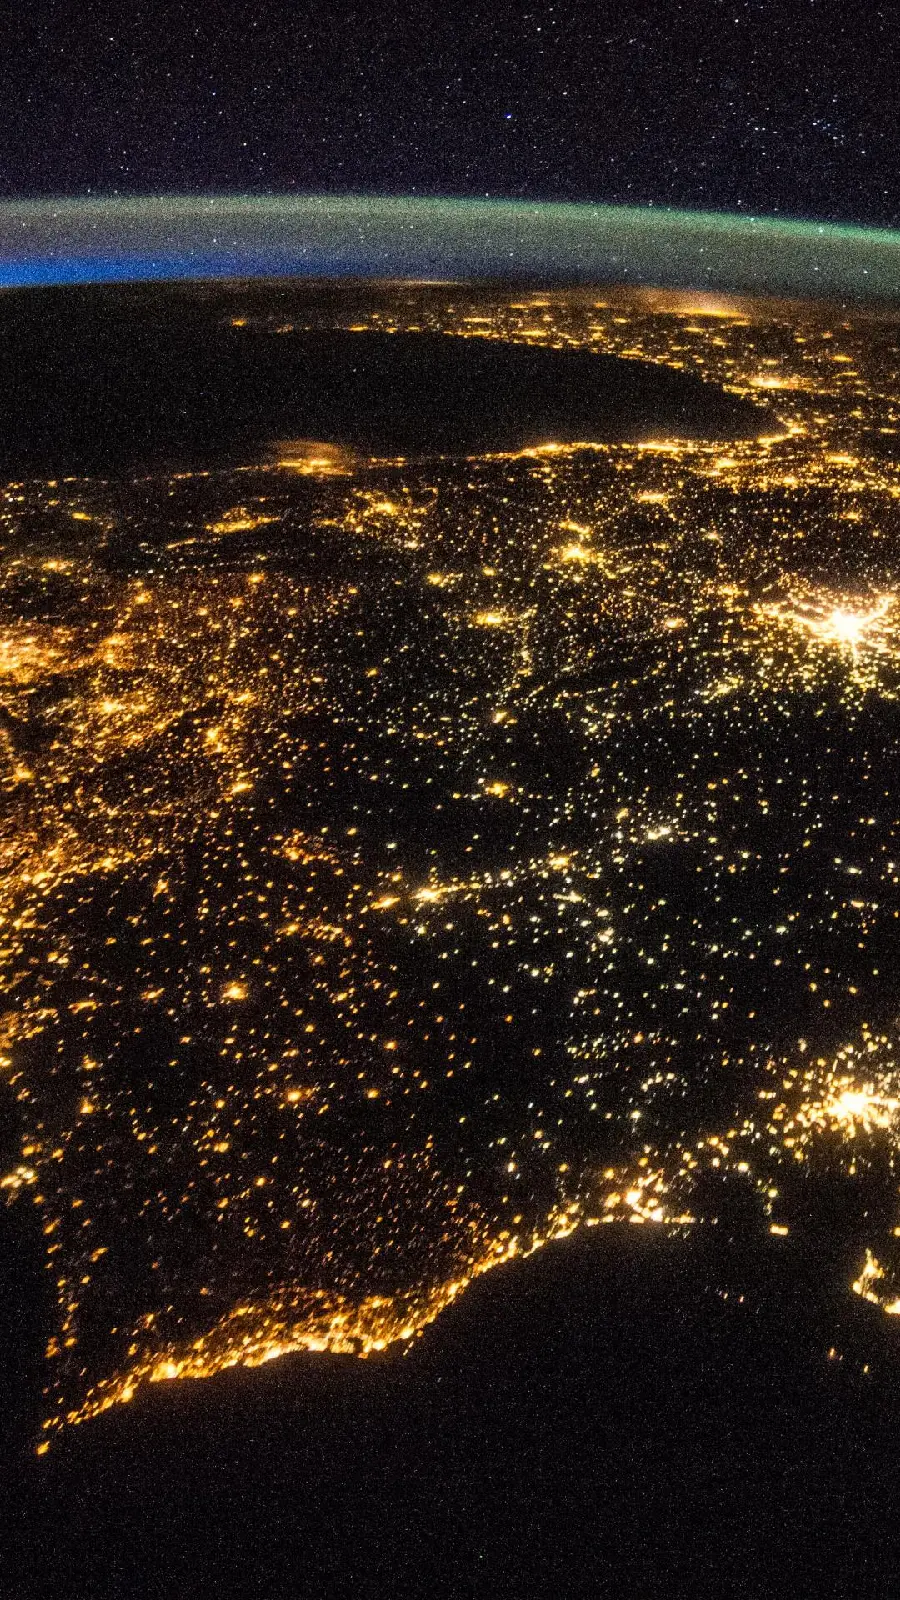 زیباترین عکس هوایی سیاره زمین در شب بعنوان پروفایل